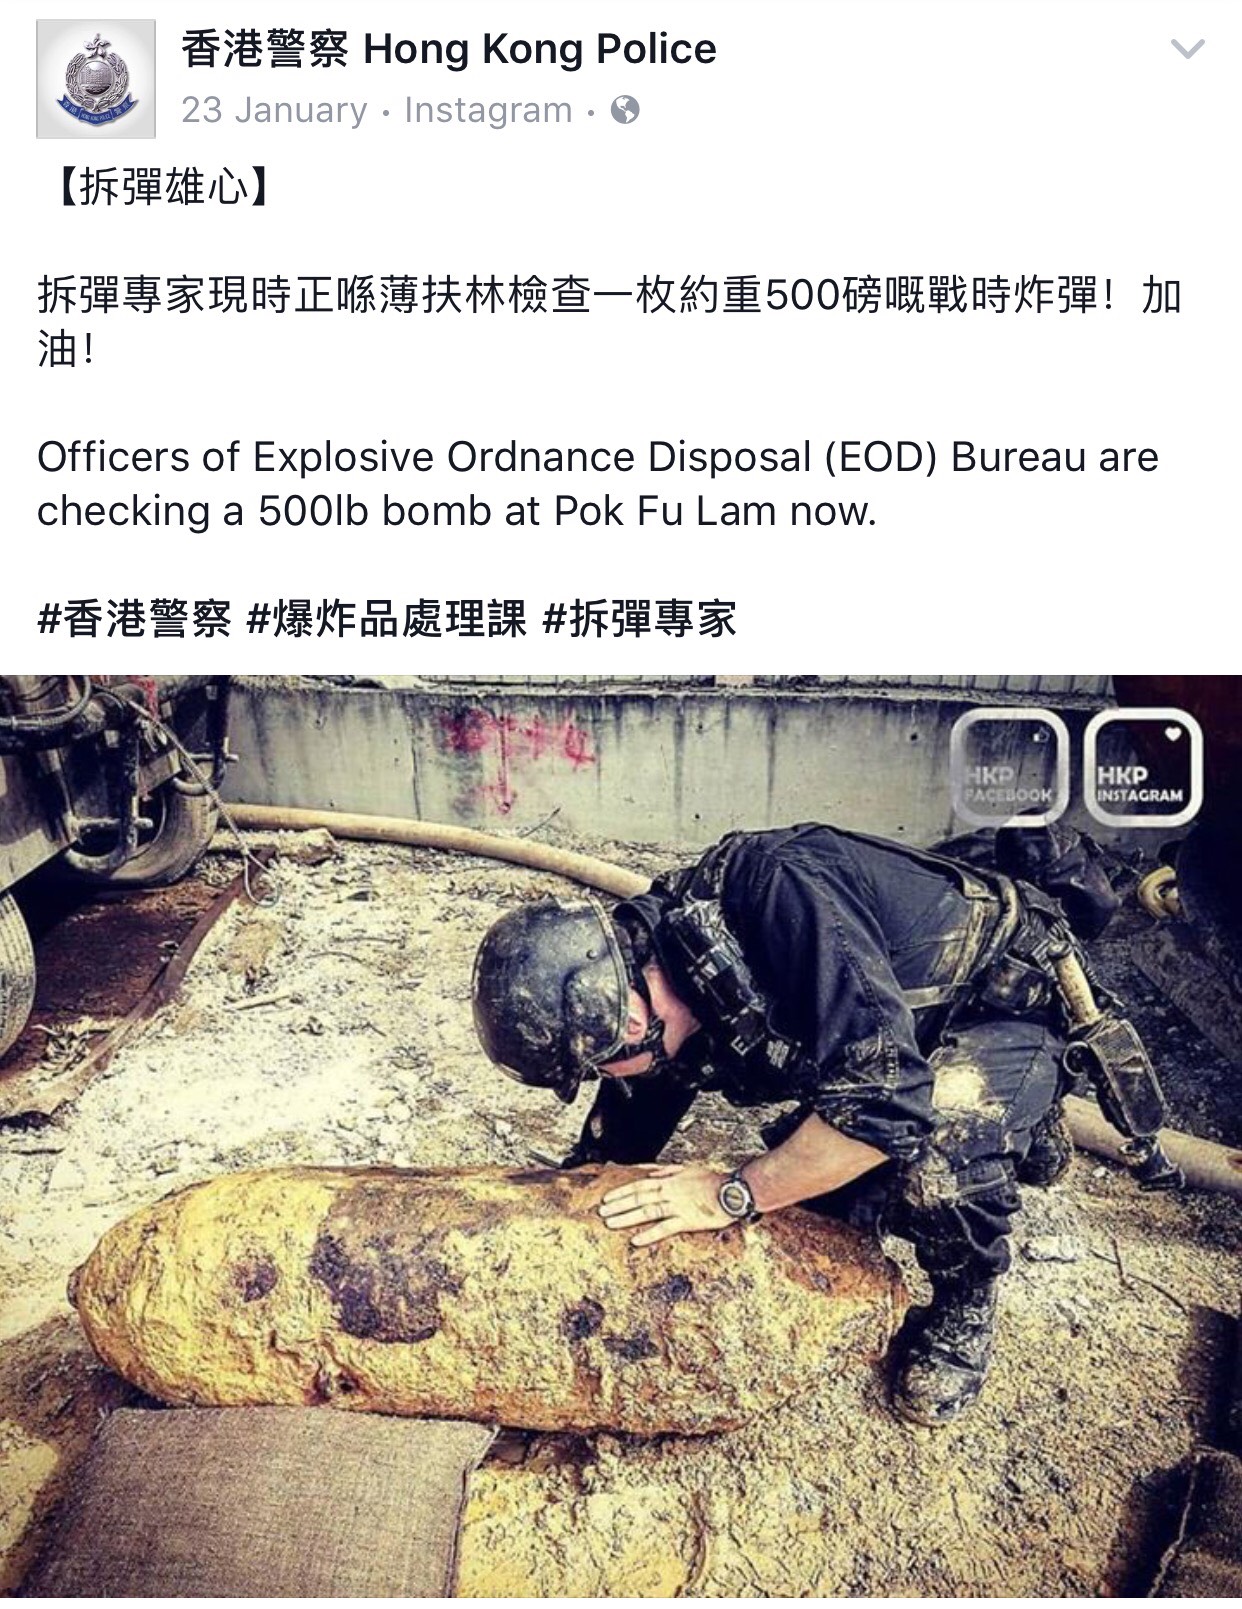 爆炸品处理课于薄扶林发现战时大型炸弹。警方把独家照透过社交媒体平台即时发放。